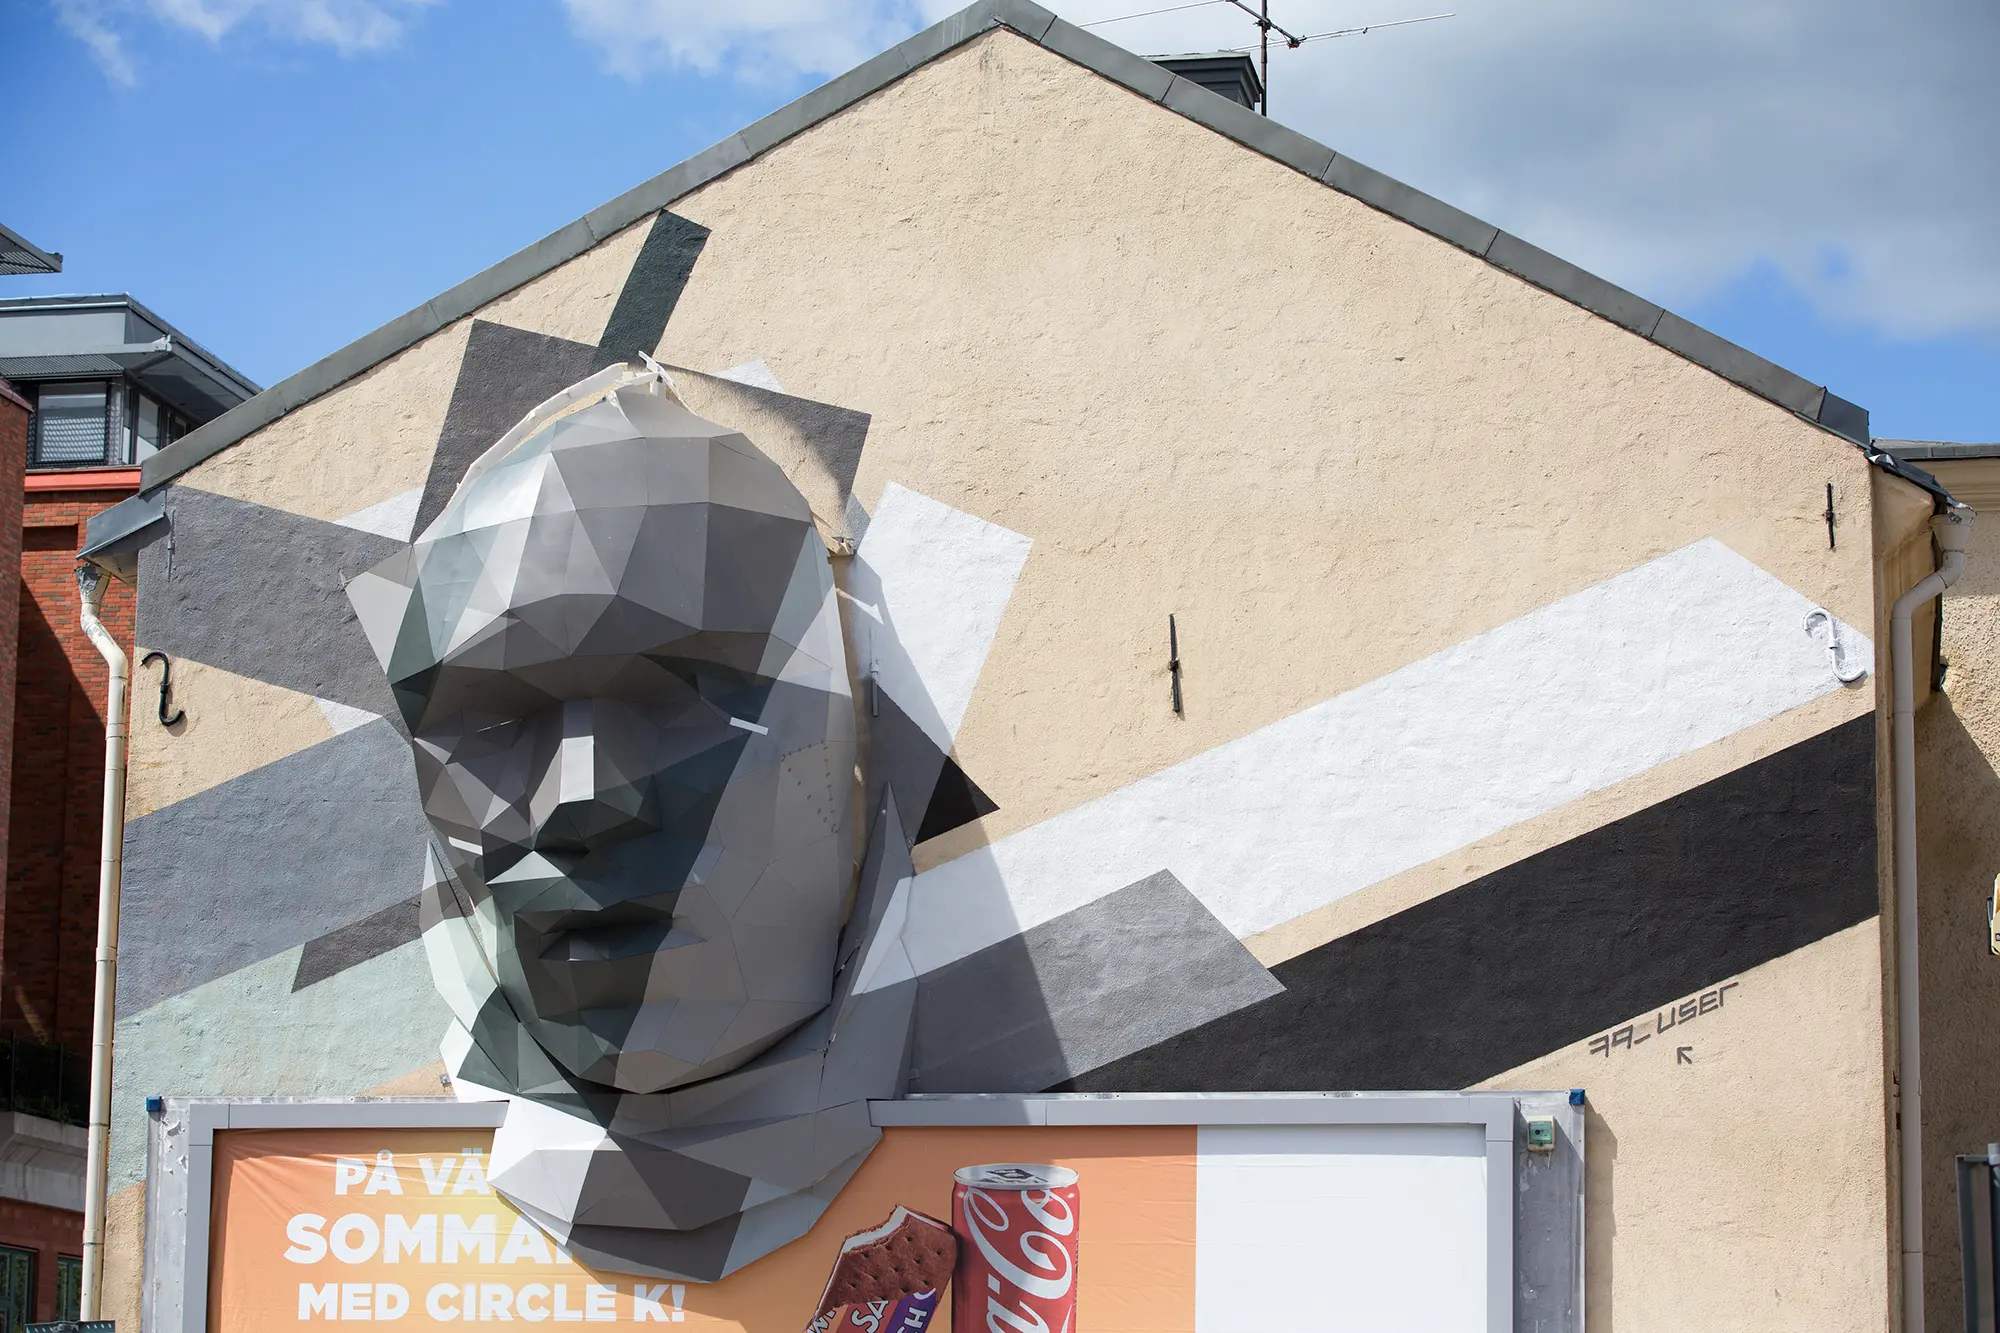 På en en husfasad ovanför en reklamplansch sitter en stor grå skulptur föreställande ett ansikte uppsatt. Ansiktet är uppbyggt av många plana ytor som sitter ihop på ett kantigt sätt. I bakgrunden syns olika målade färgfält svart, vitt och grått.